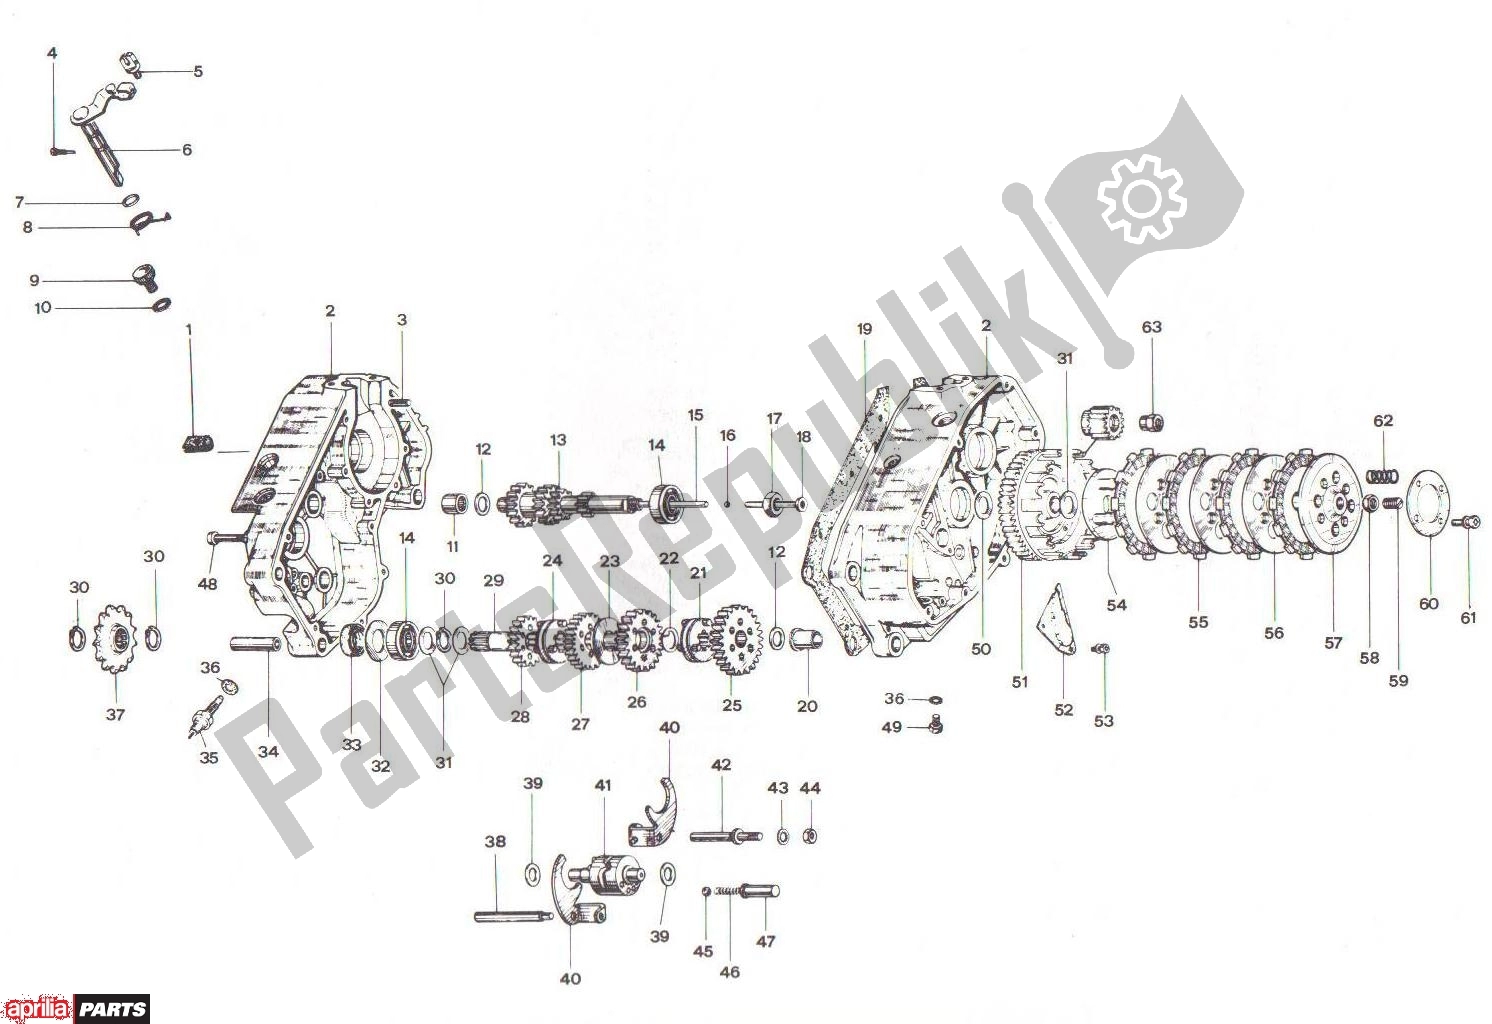 Todas las partes para Crankcase Clutch Transmission Basamento Frizione Cambio de Aprilia RV3/4 700 50 1986 - 1992